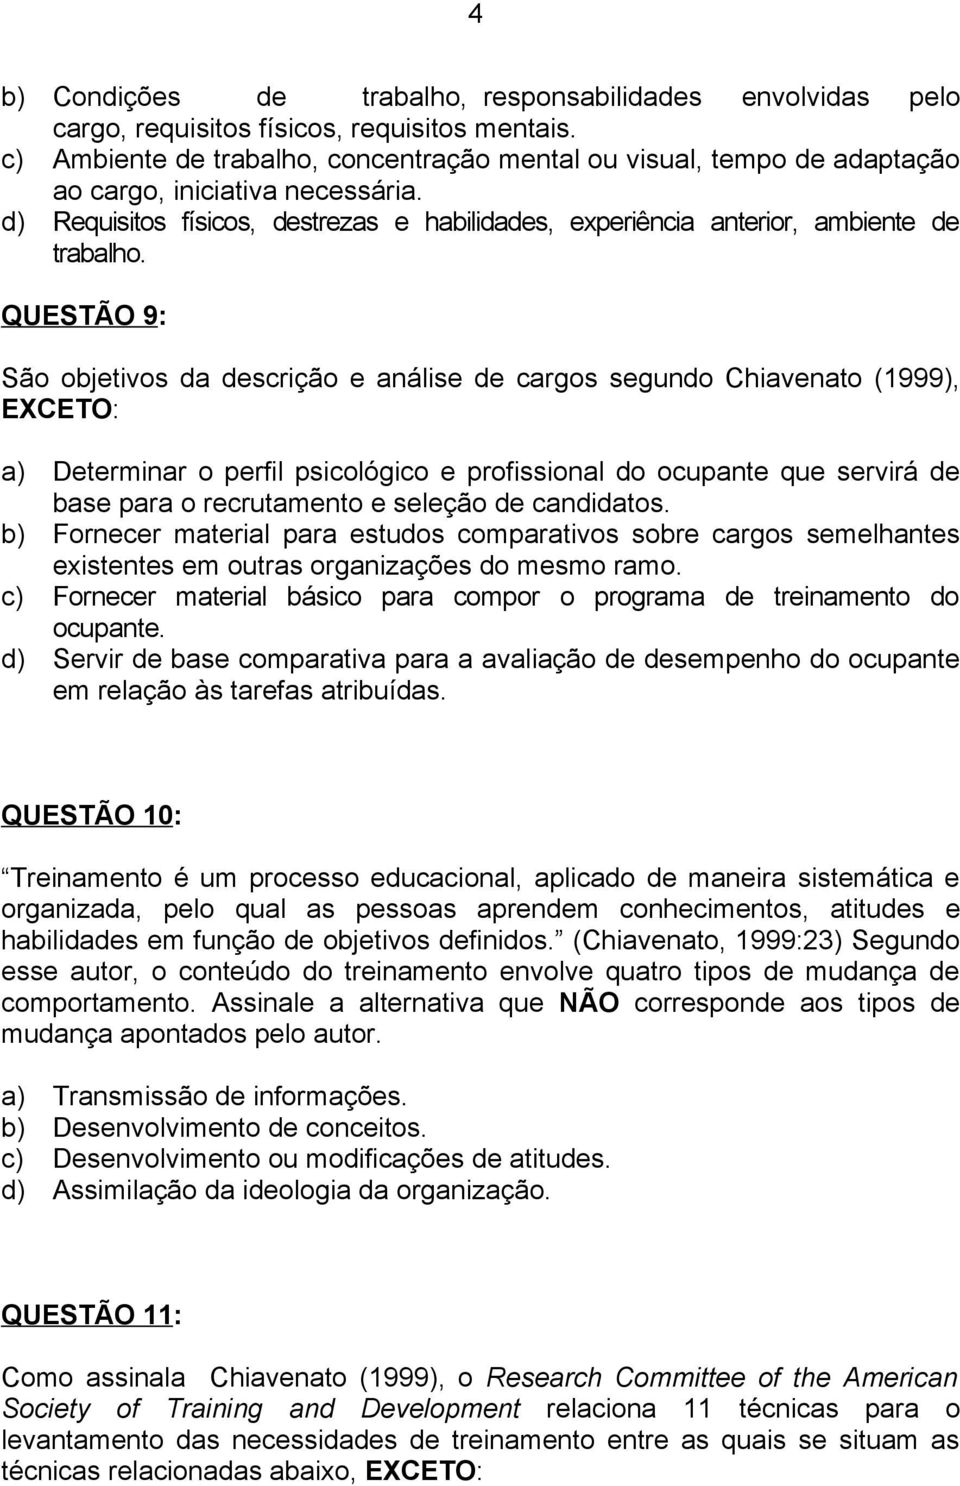 QUESTÃO 9: São objetivos da descrição e análise de cargos segundo Chiavenato (1999), EXCETO: a) Determinar o perfil psicológico e profissional do ocupante que servirá de base para o recrutamento e